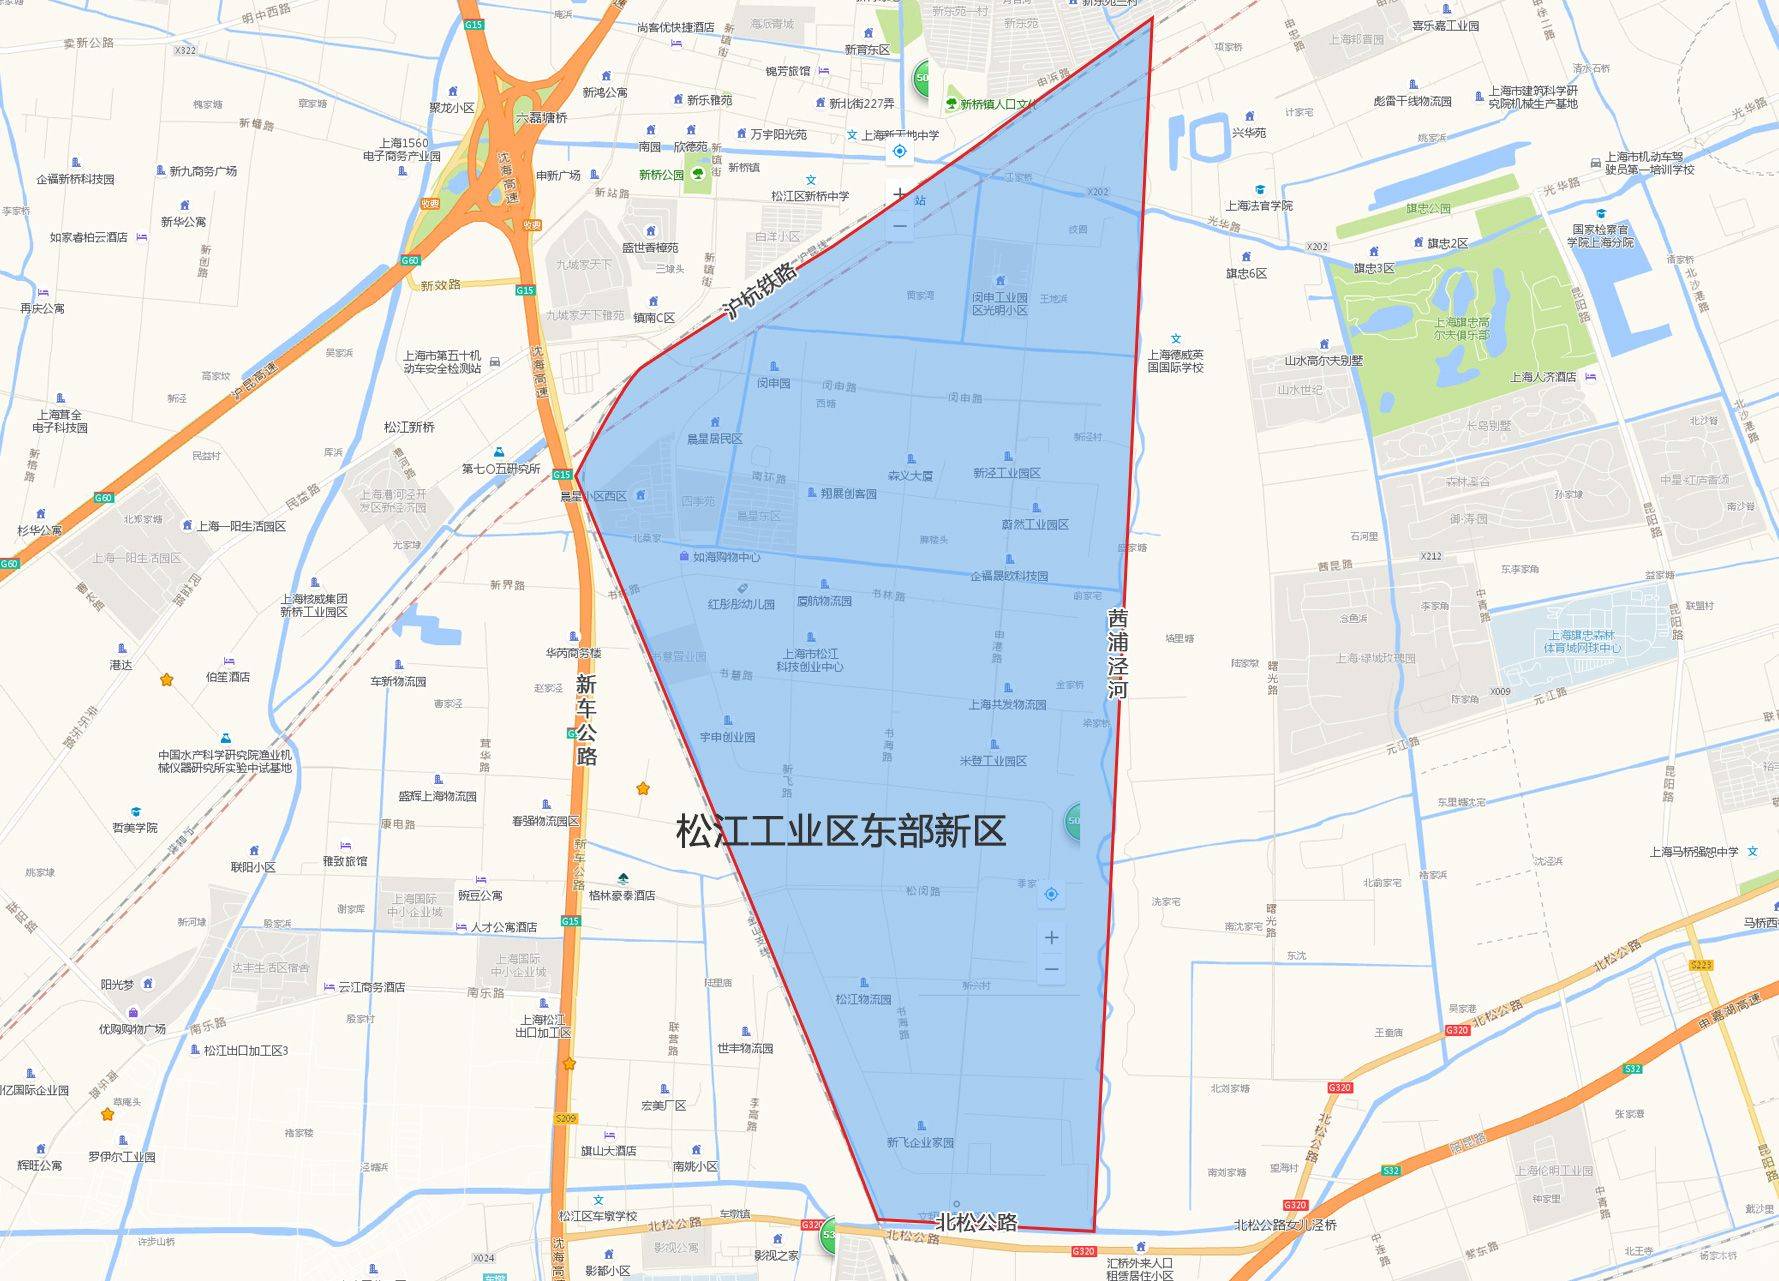 松江經濟技術開發區東部園區